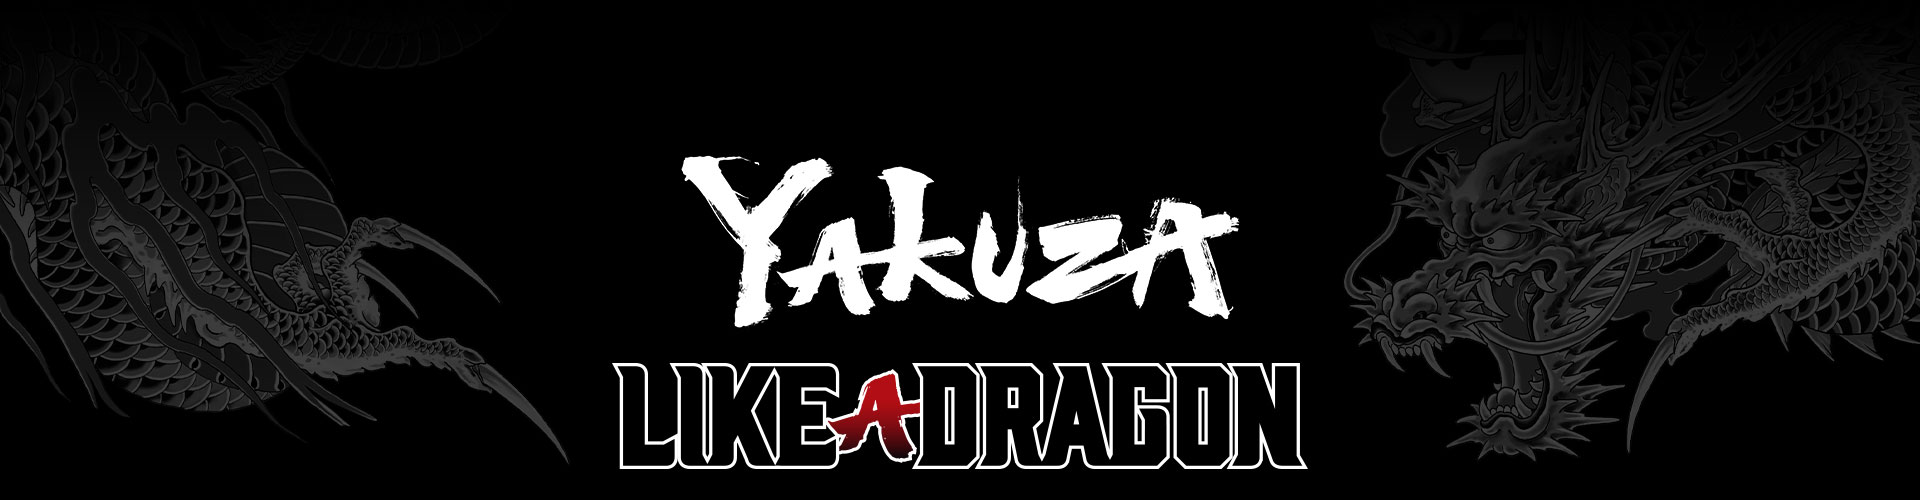 꾸며진 회색 용 문신 배경의 Yakuza 용과 같이 시리즈 로고.